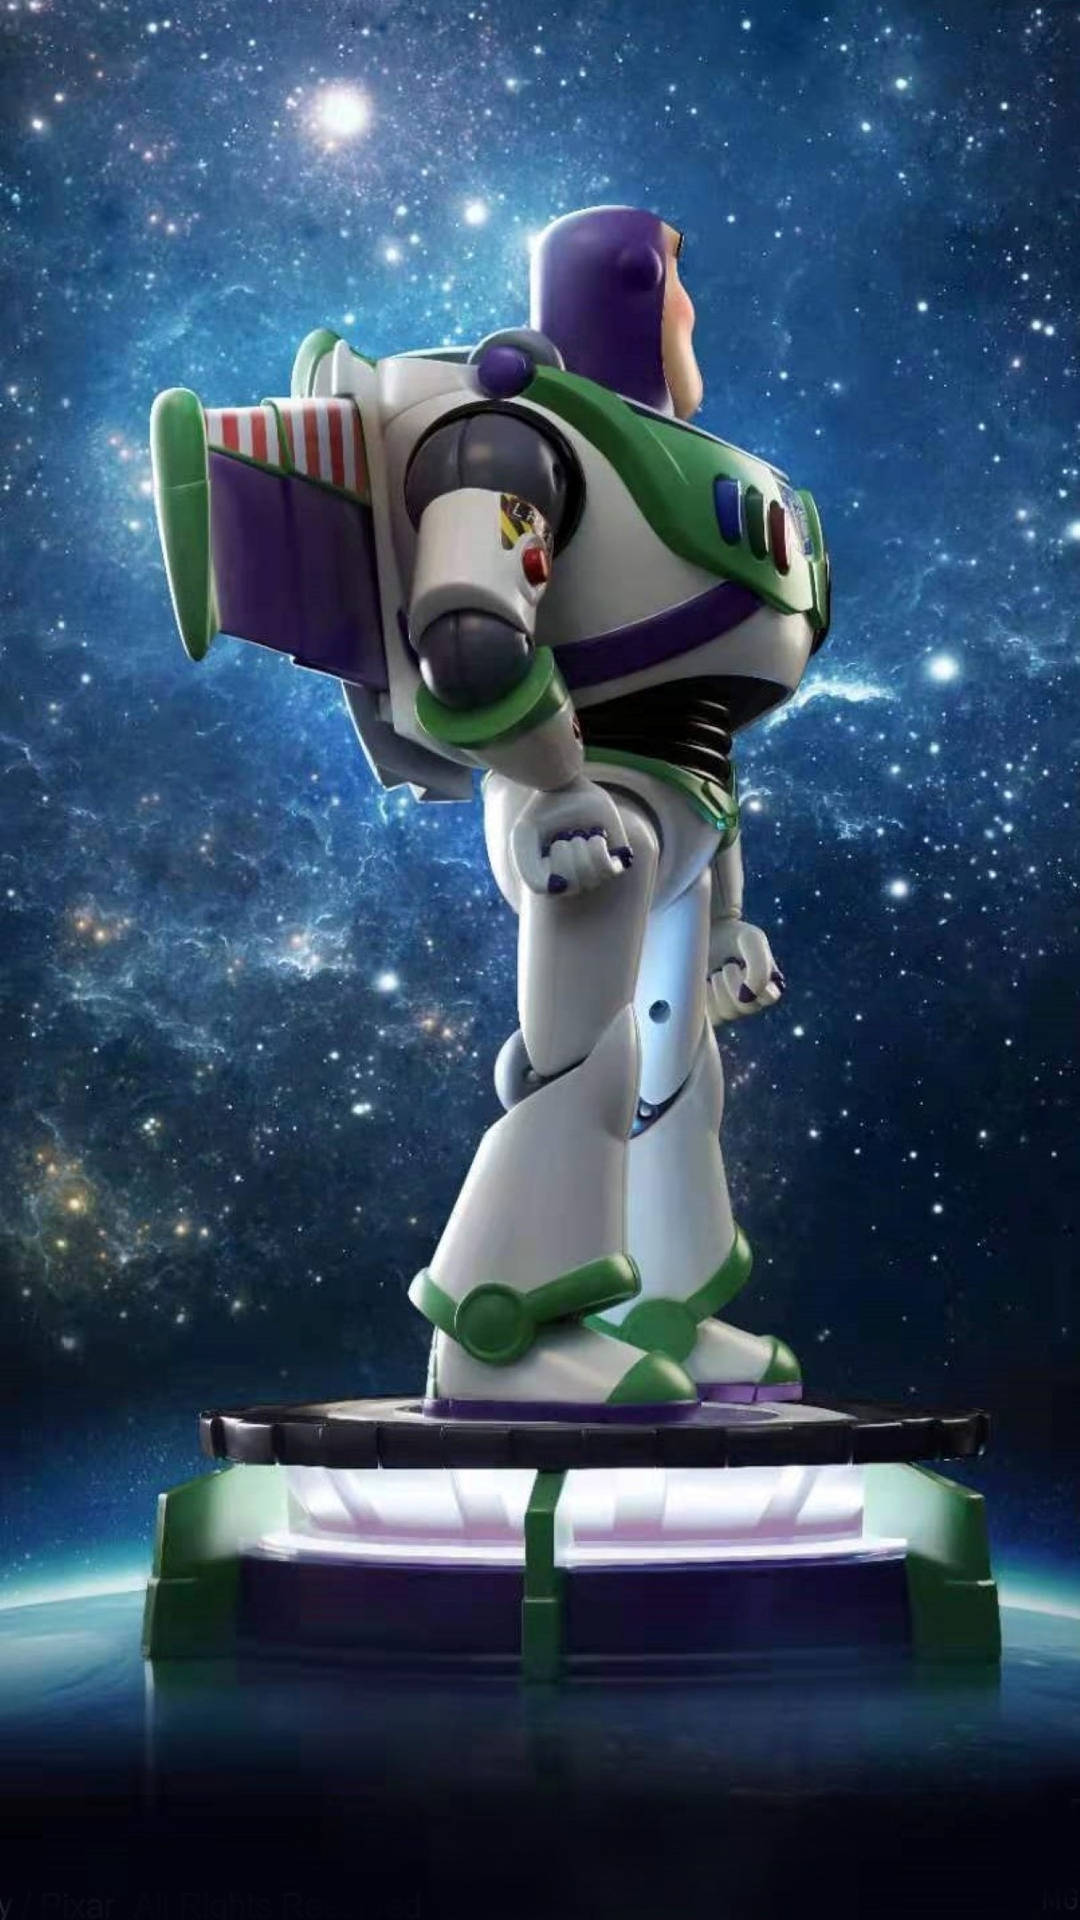 Buzz Lightyear In Space